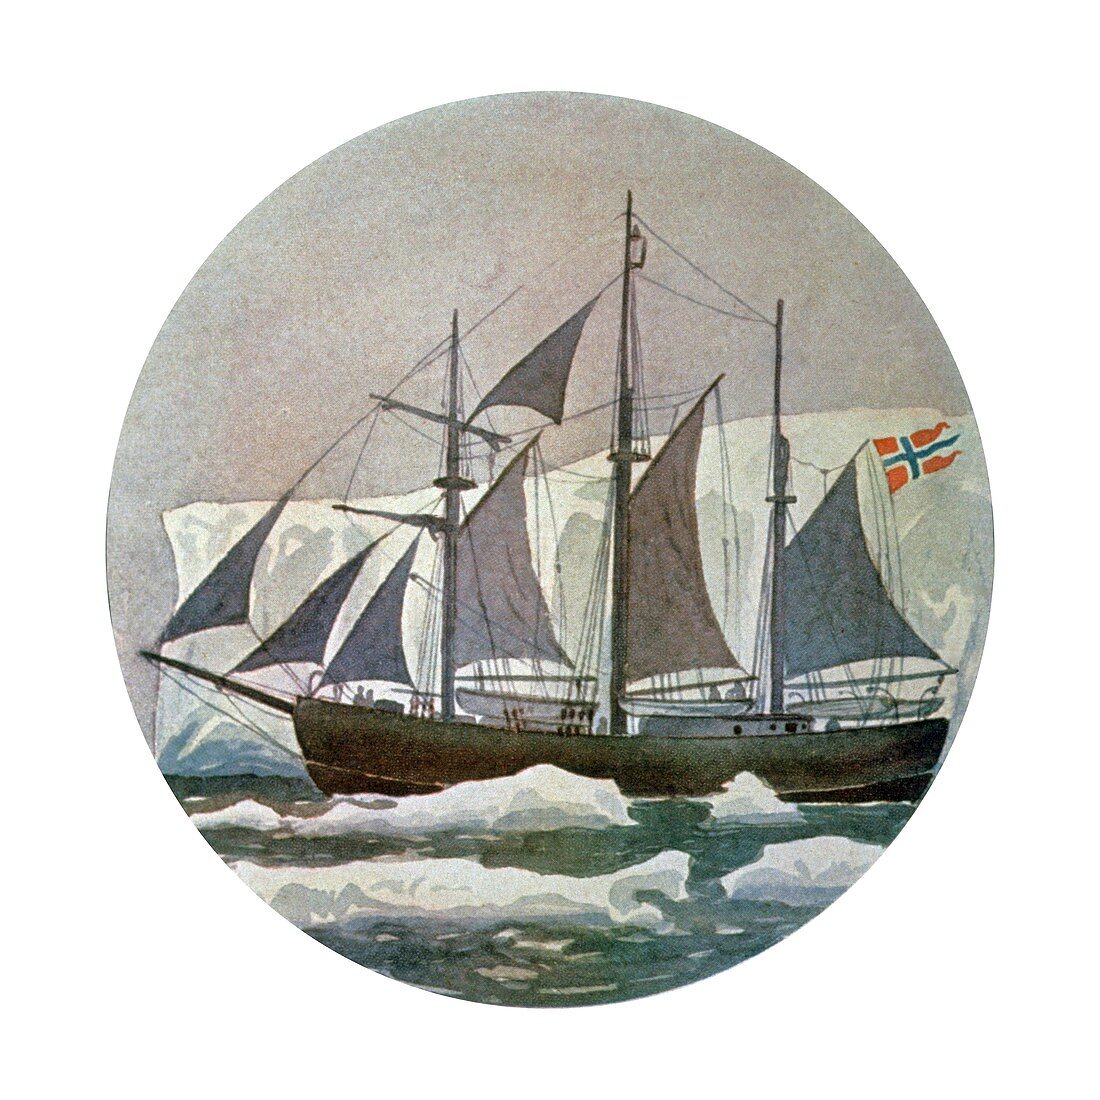 Roald Amundsen's boat the Fram,artwork